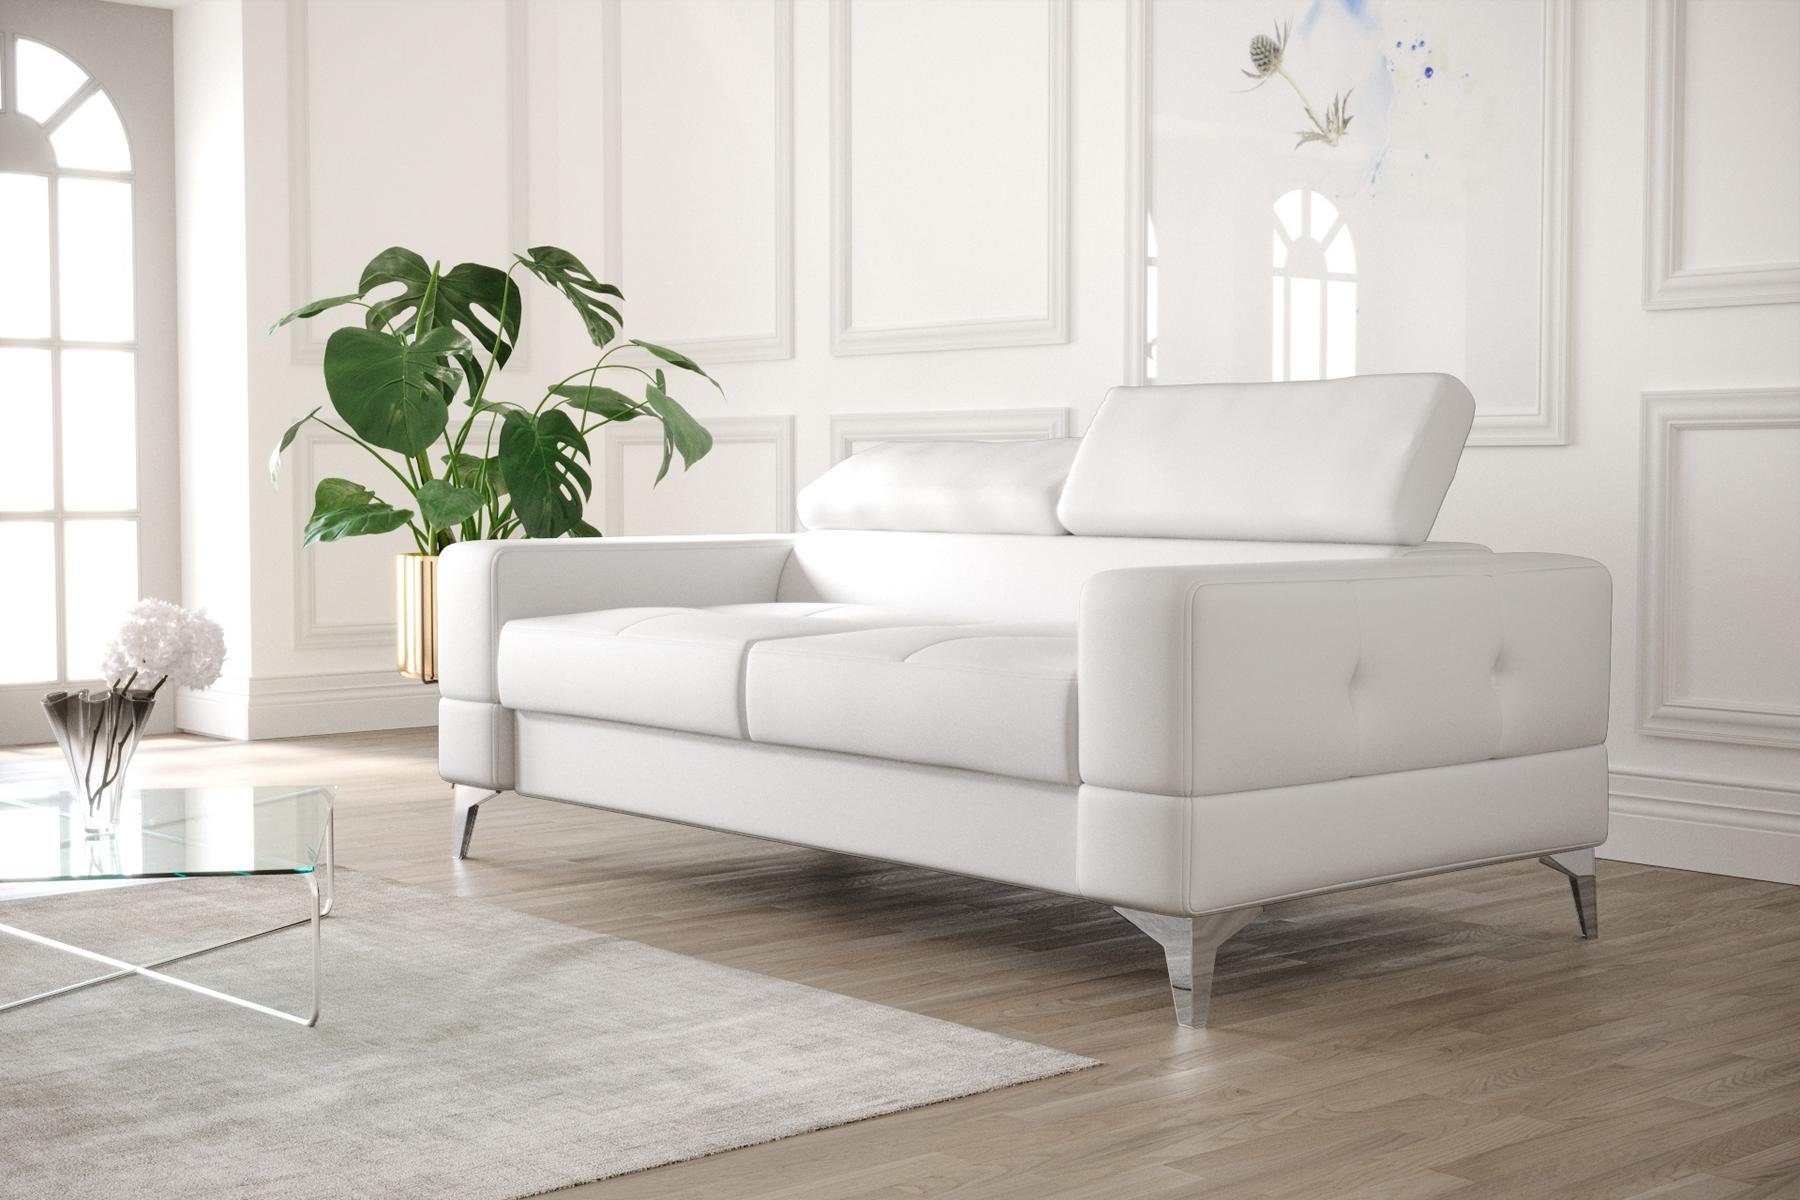 JVmoebel Sofa Schwarzer Zweisitzer Luxus Couch Moderne Wohnzimmer Sitzmöbel, Made in Europe Weiß